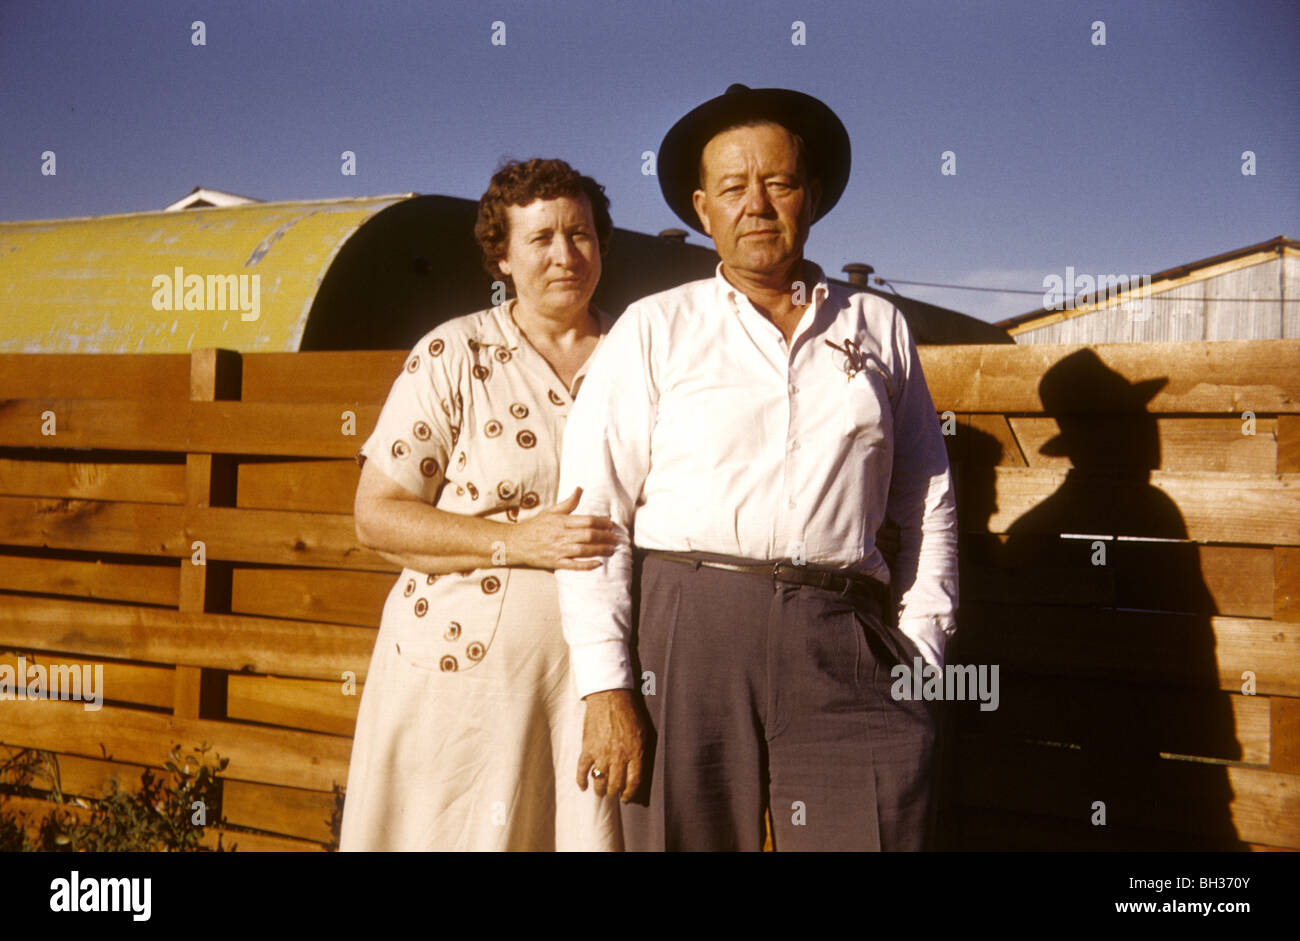 Vieux couple debout par une clôture dans l'Ouest américain pendant les années 50 ou 60. Banque D'Images